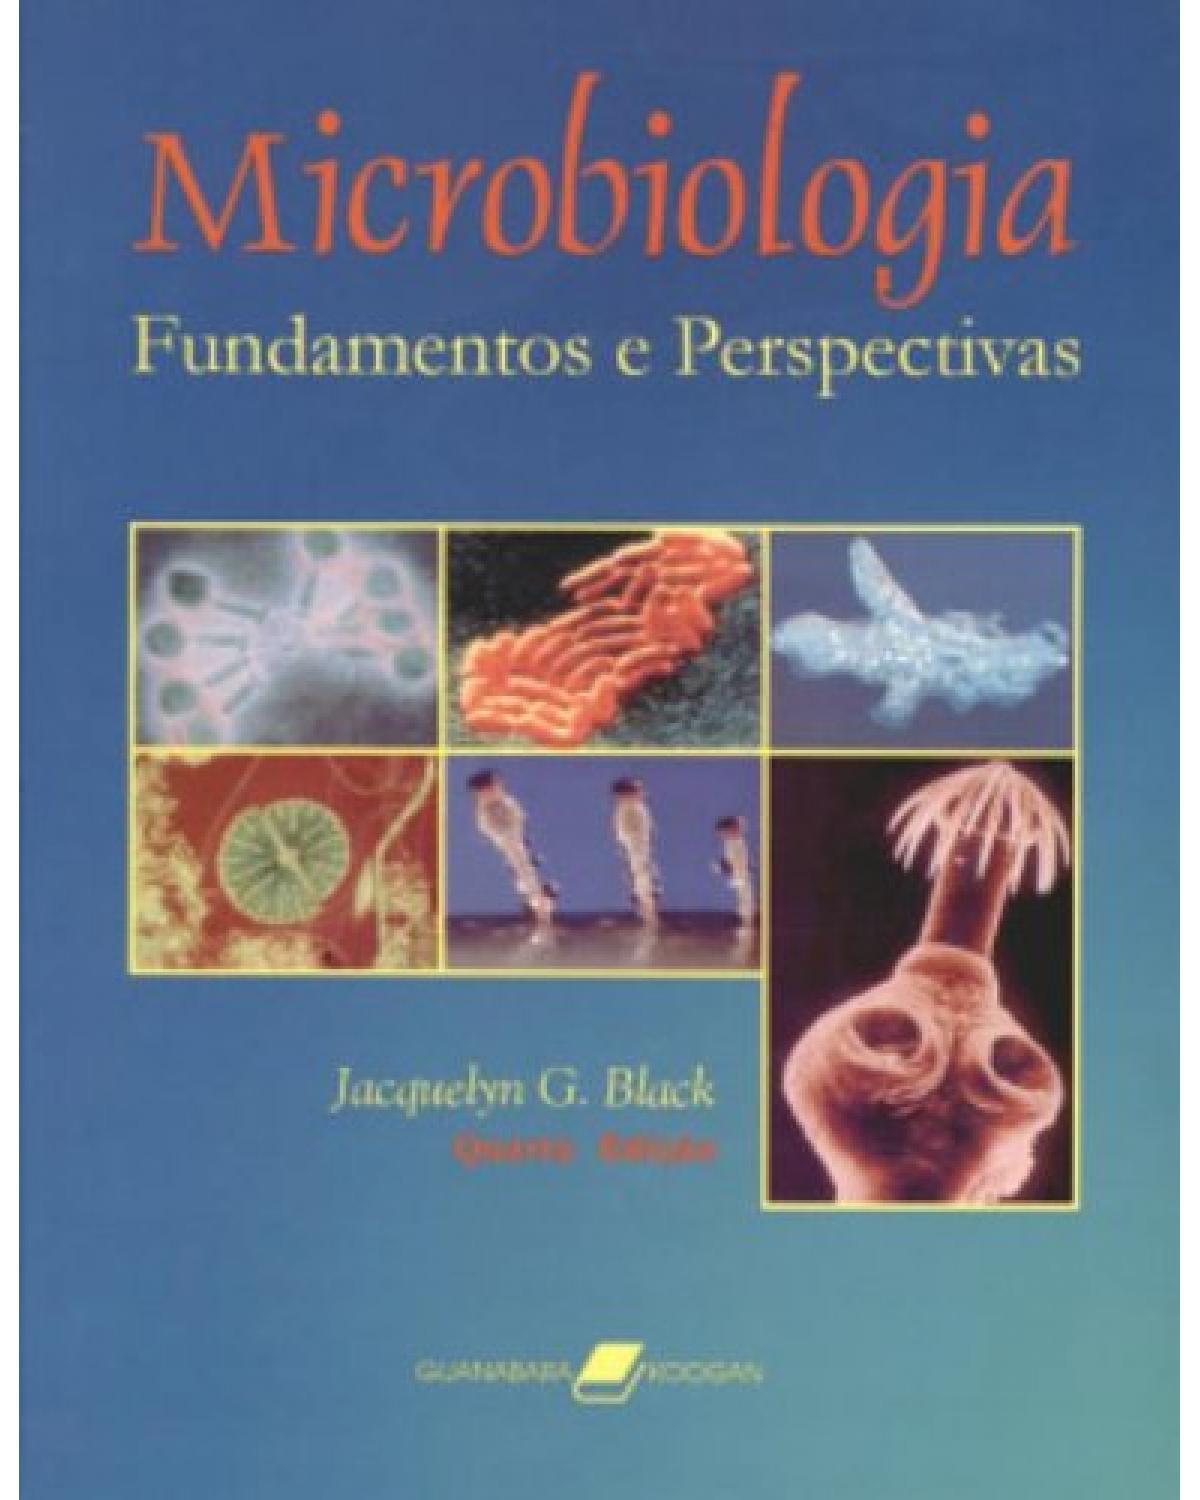 Microbiologia - Fundamentos e perspectivas - 4ª Edição | 2002